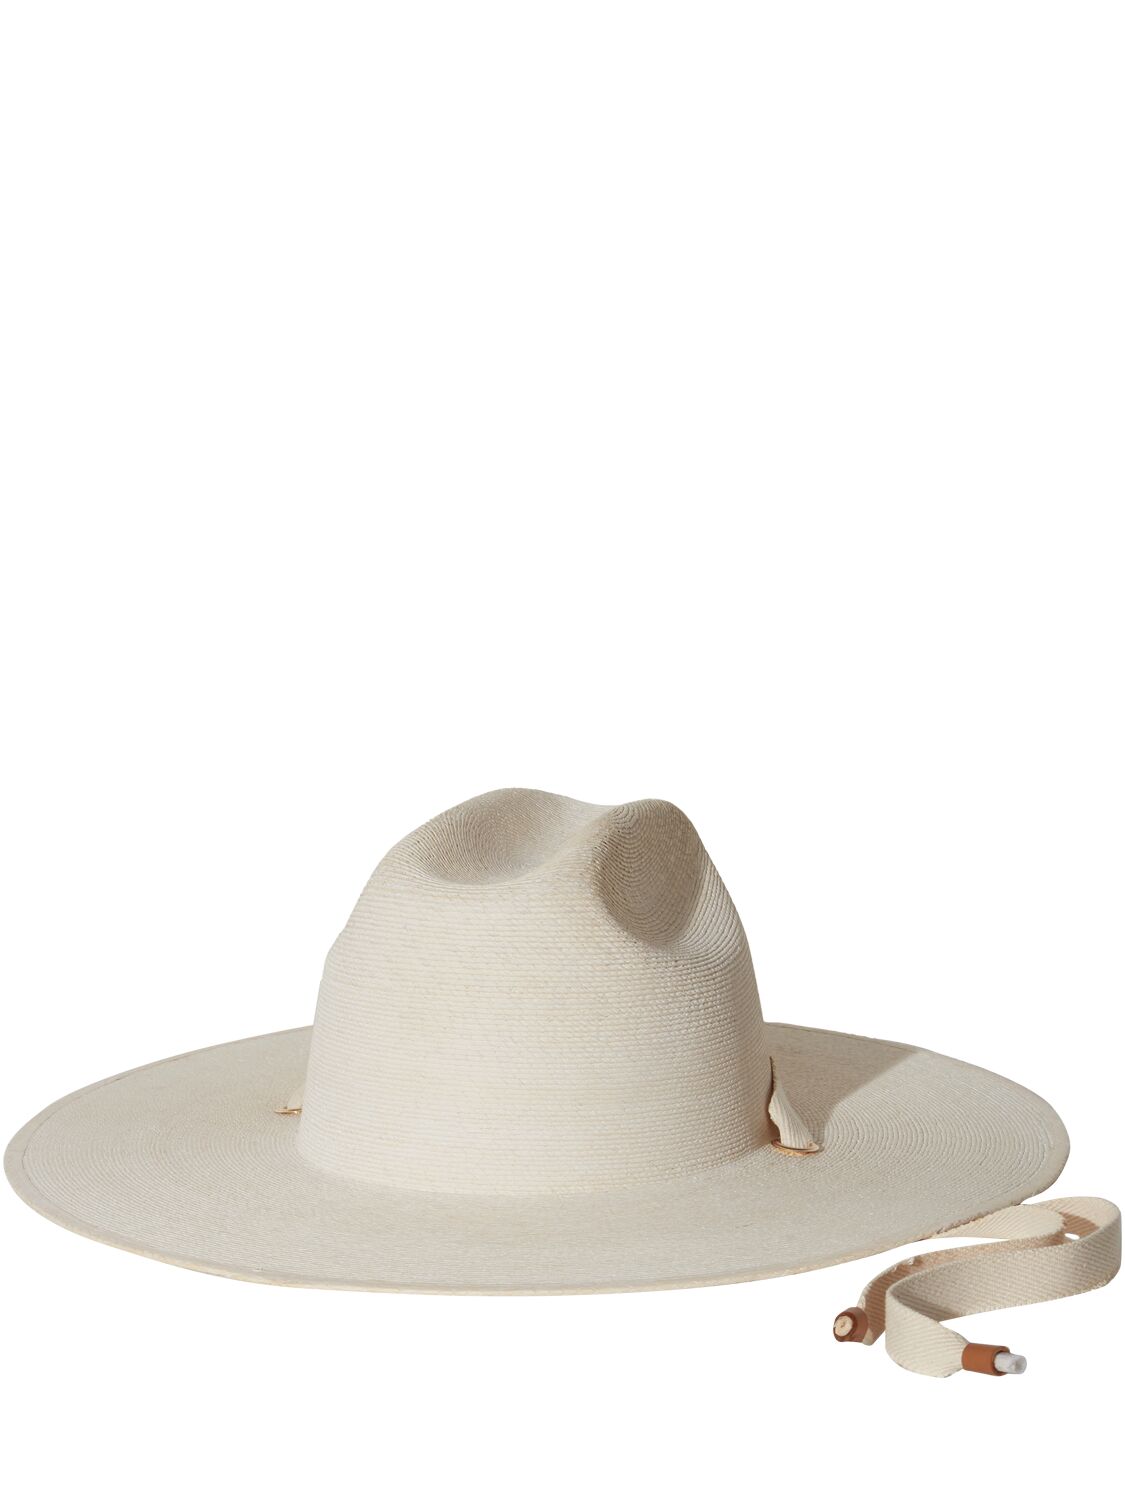 Janessa Leone Palmer Structured Straw Hat In Bleach